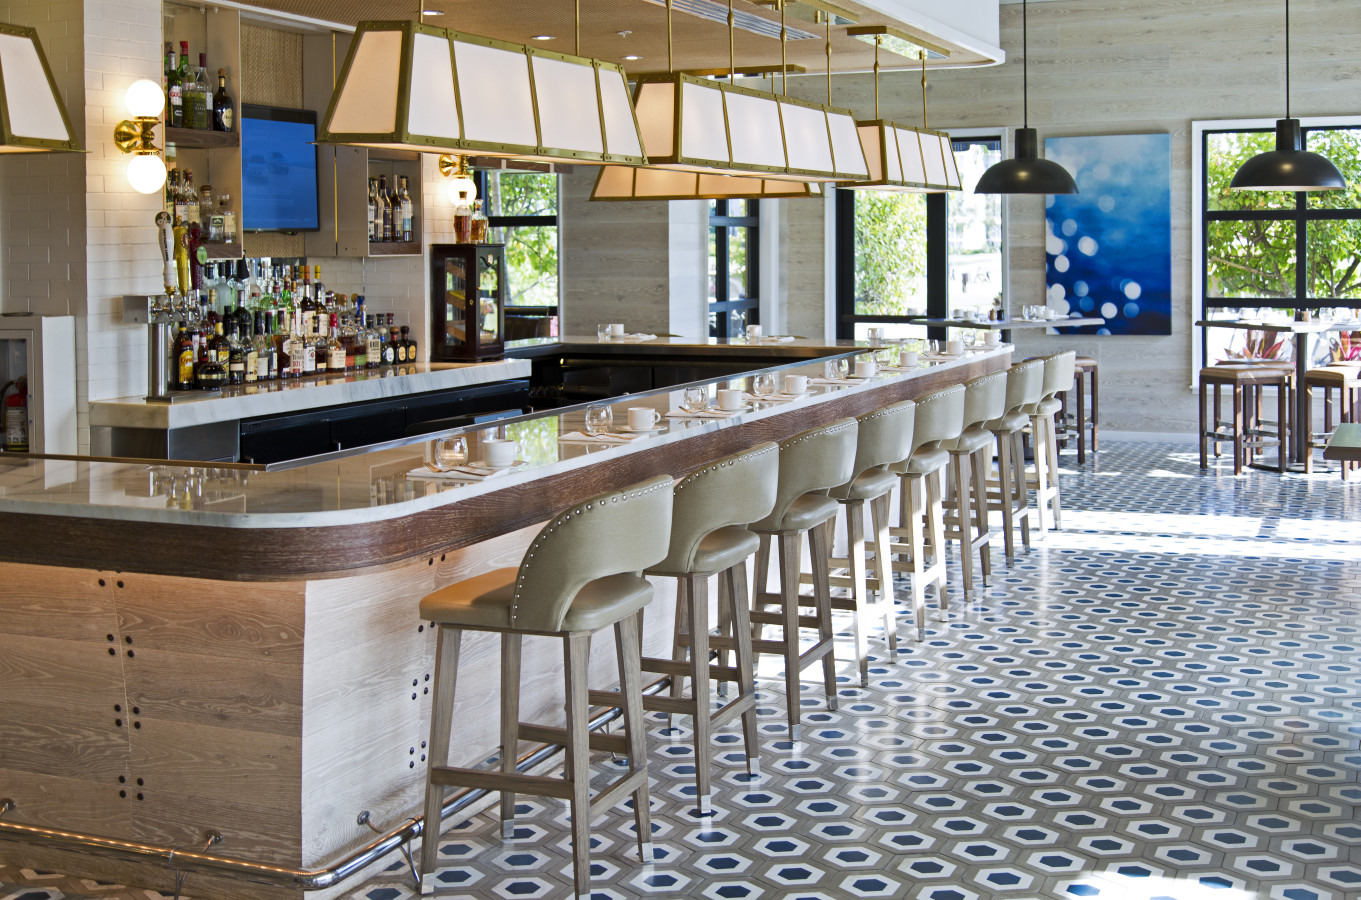 corsair kitchen and bar menu jekyll island